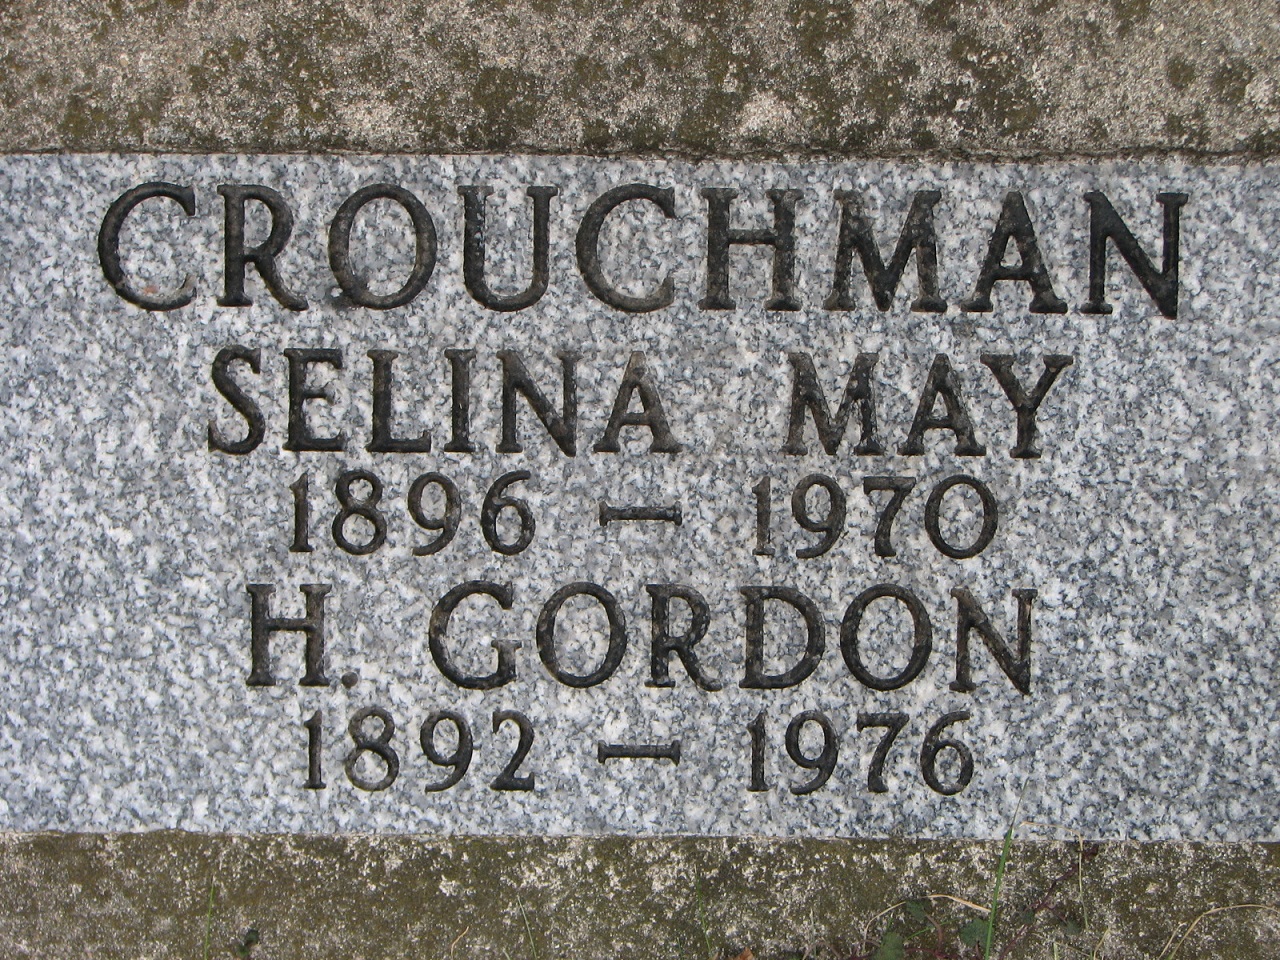 Selina May 1896-1970 Gordon 1892-1976 Crouchman  L Lot 376ot 66 N&W